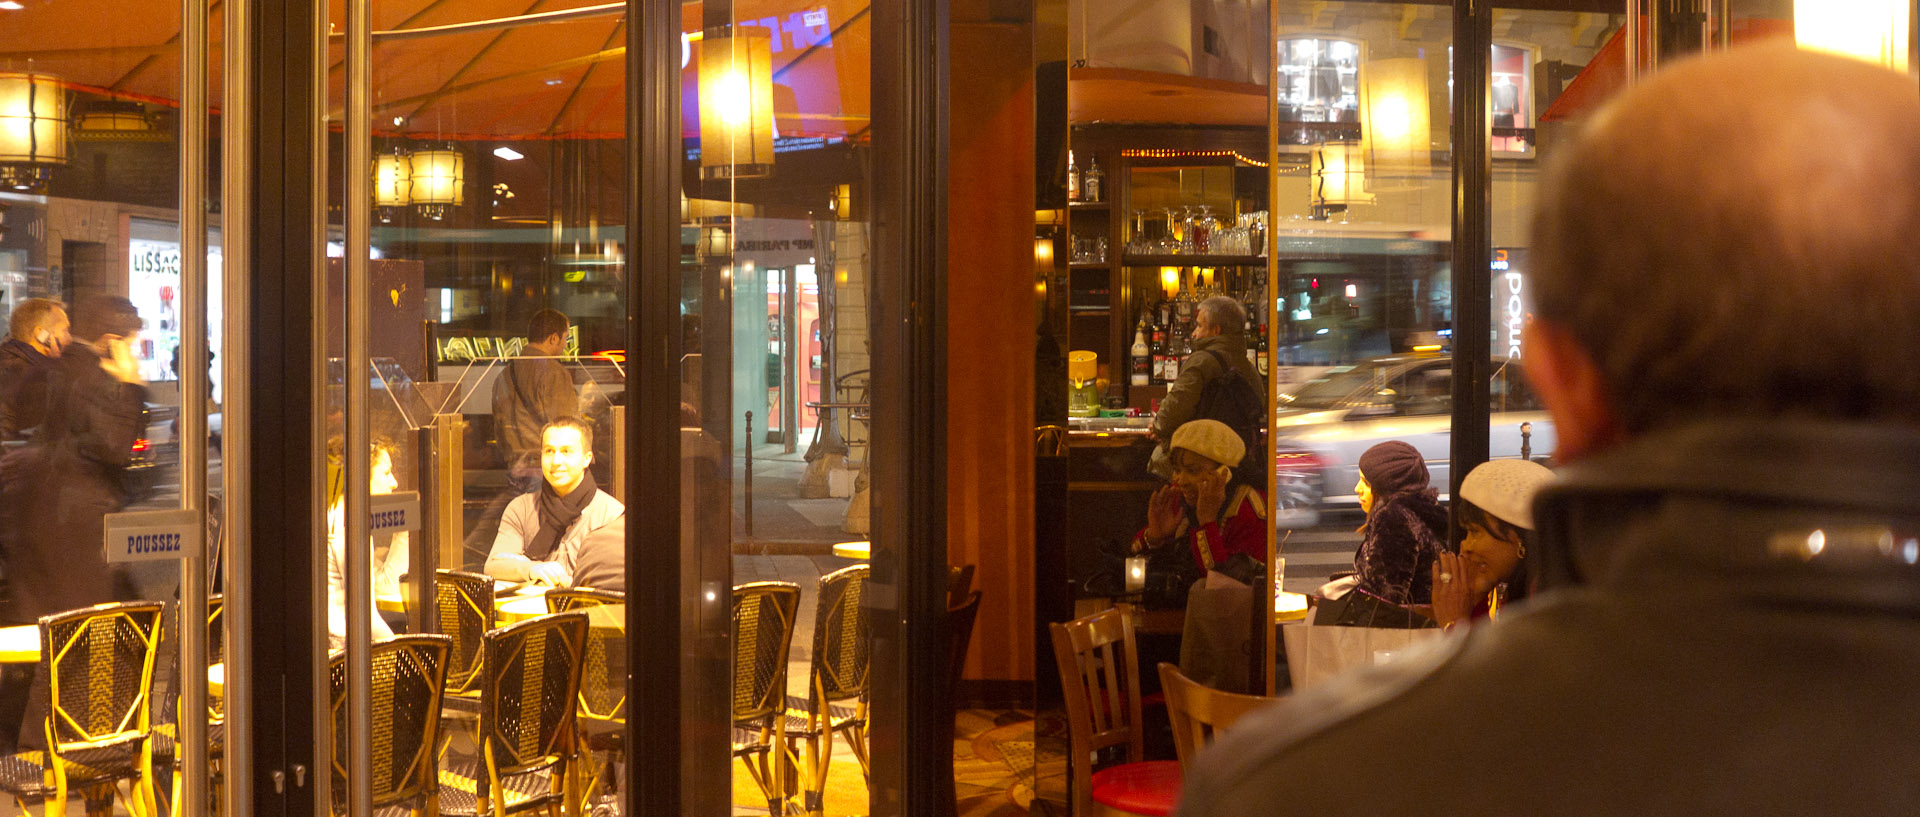 Brasserie, rue des Lavandières Sainte-Opportune, à Paris.